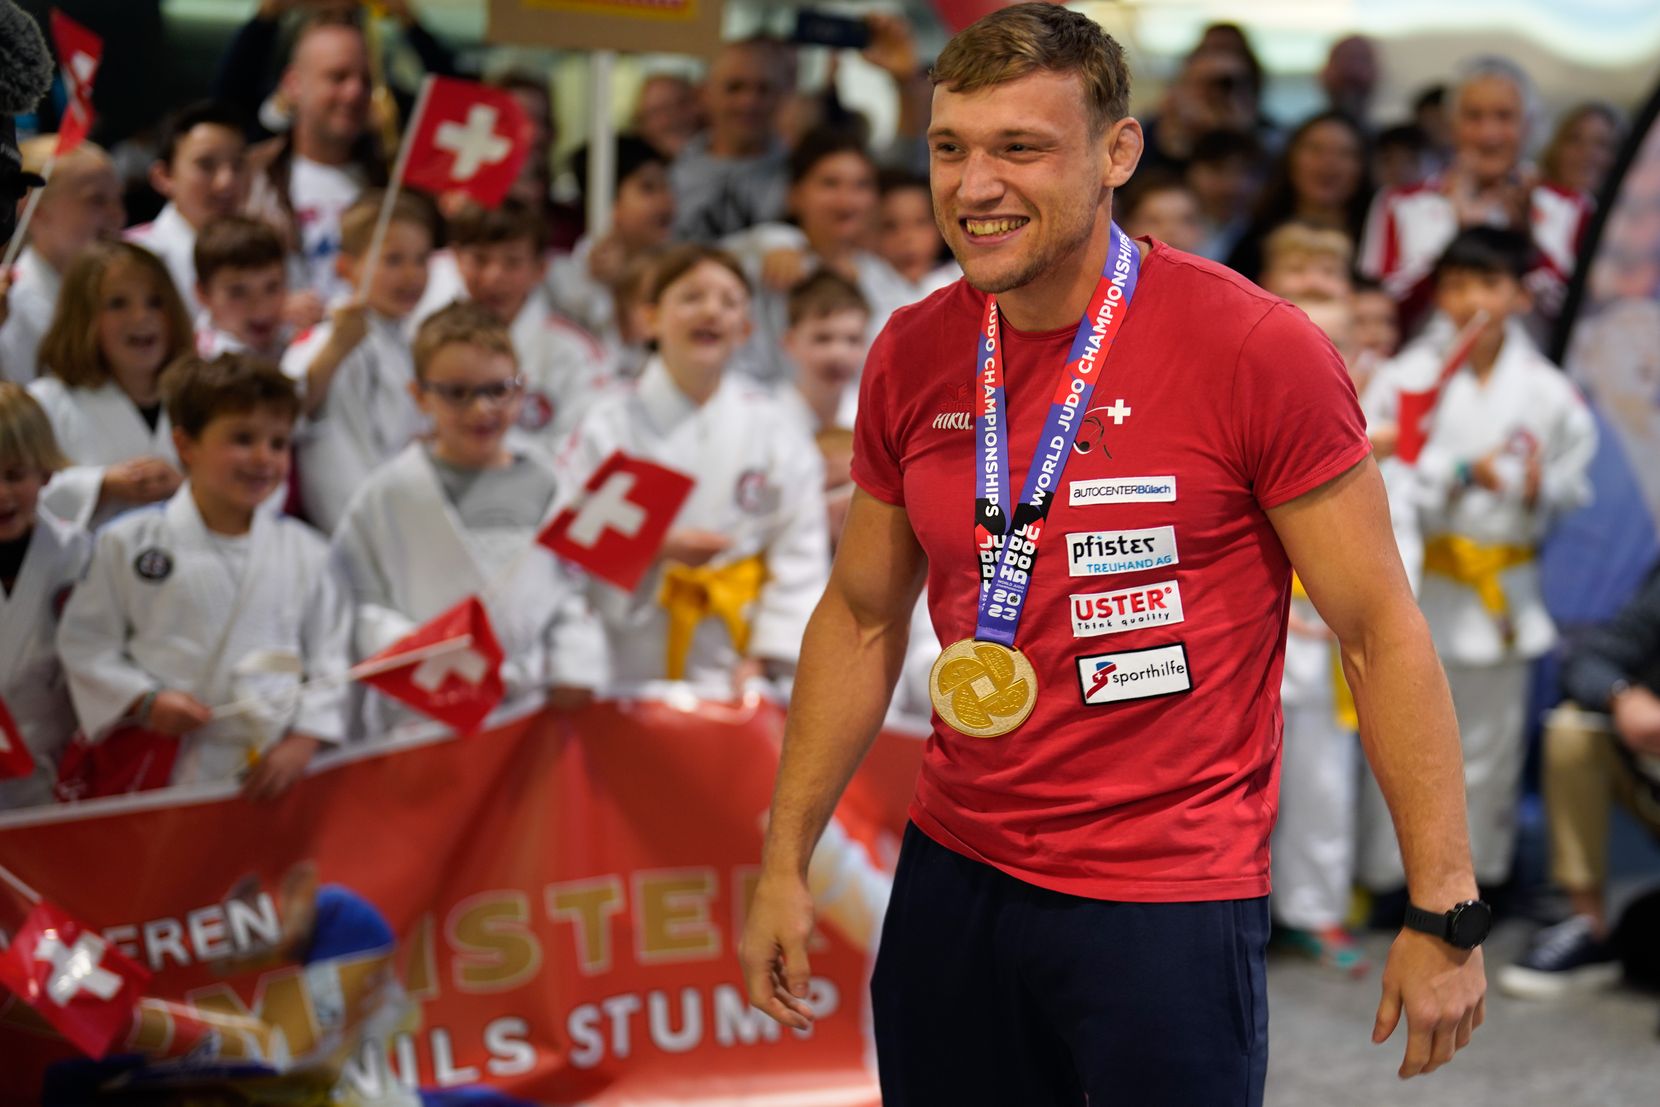 Empfang des Judo Weltmeisters Nils Stump am Flughafen Zürich